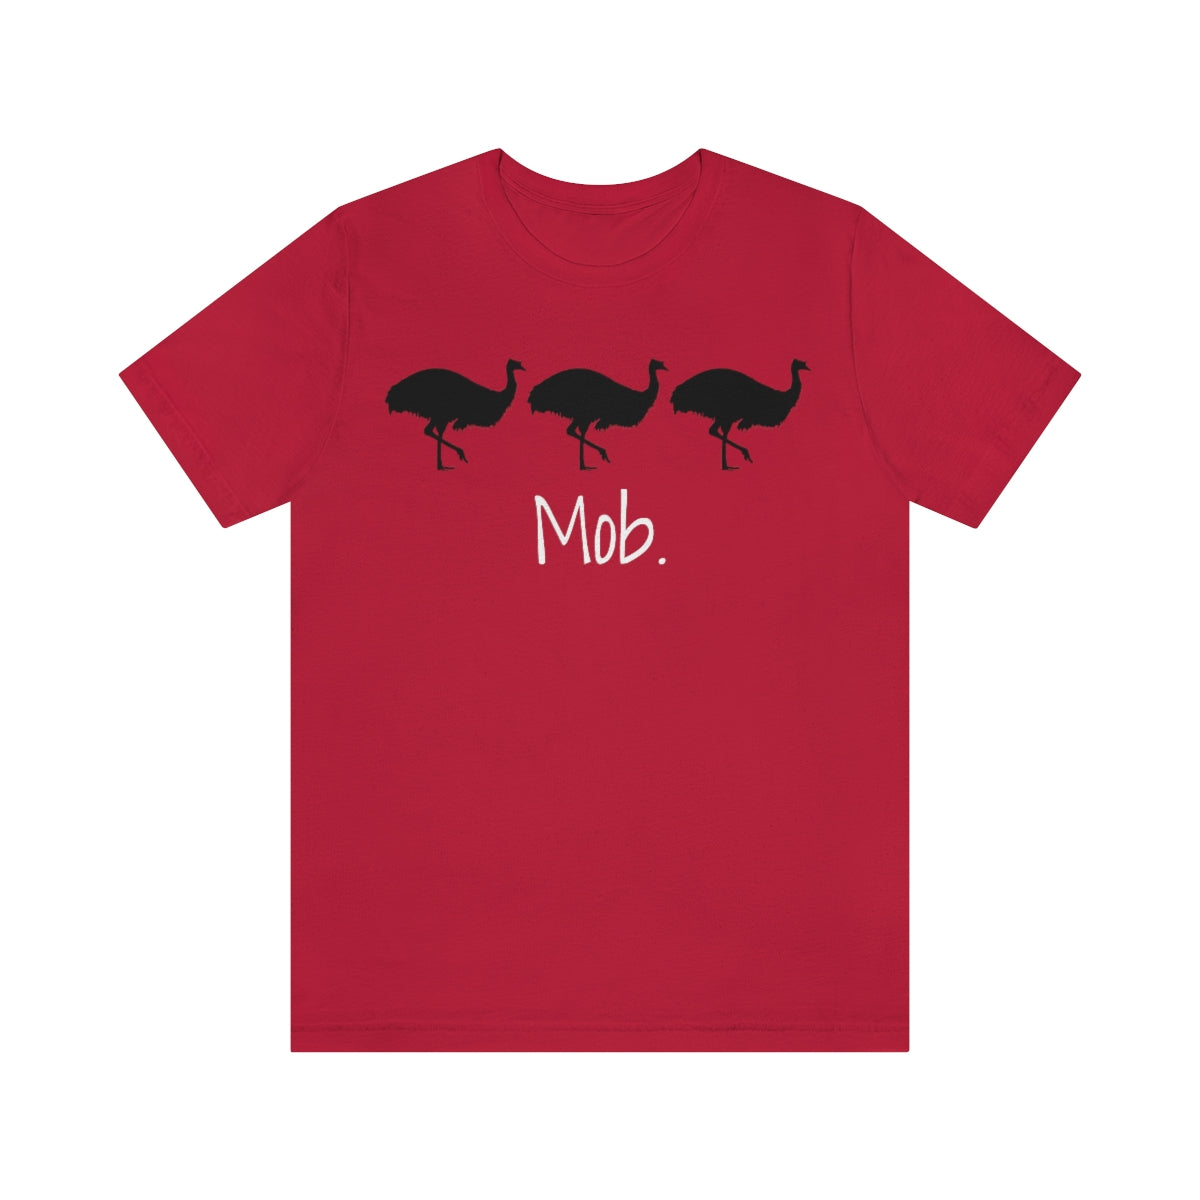 Mob of Emus T-shirt